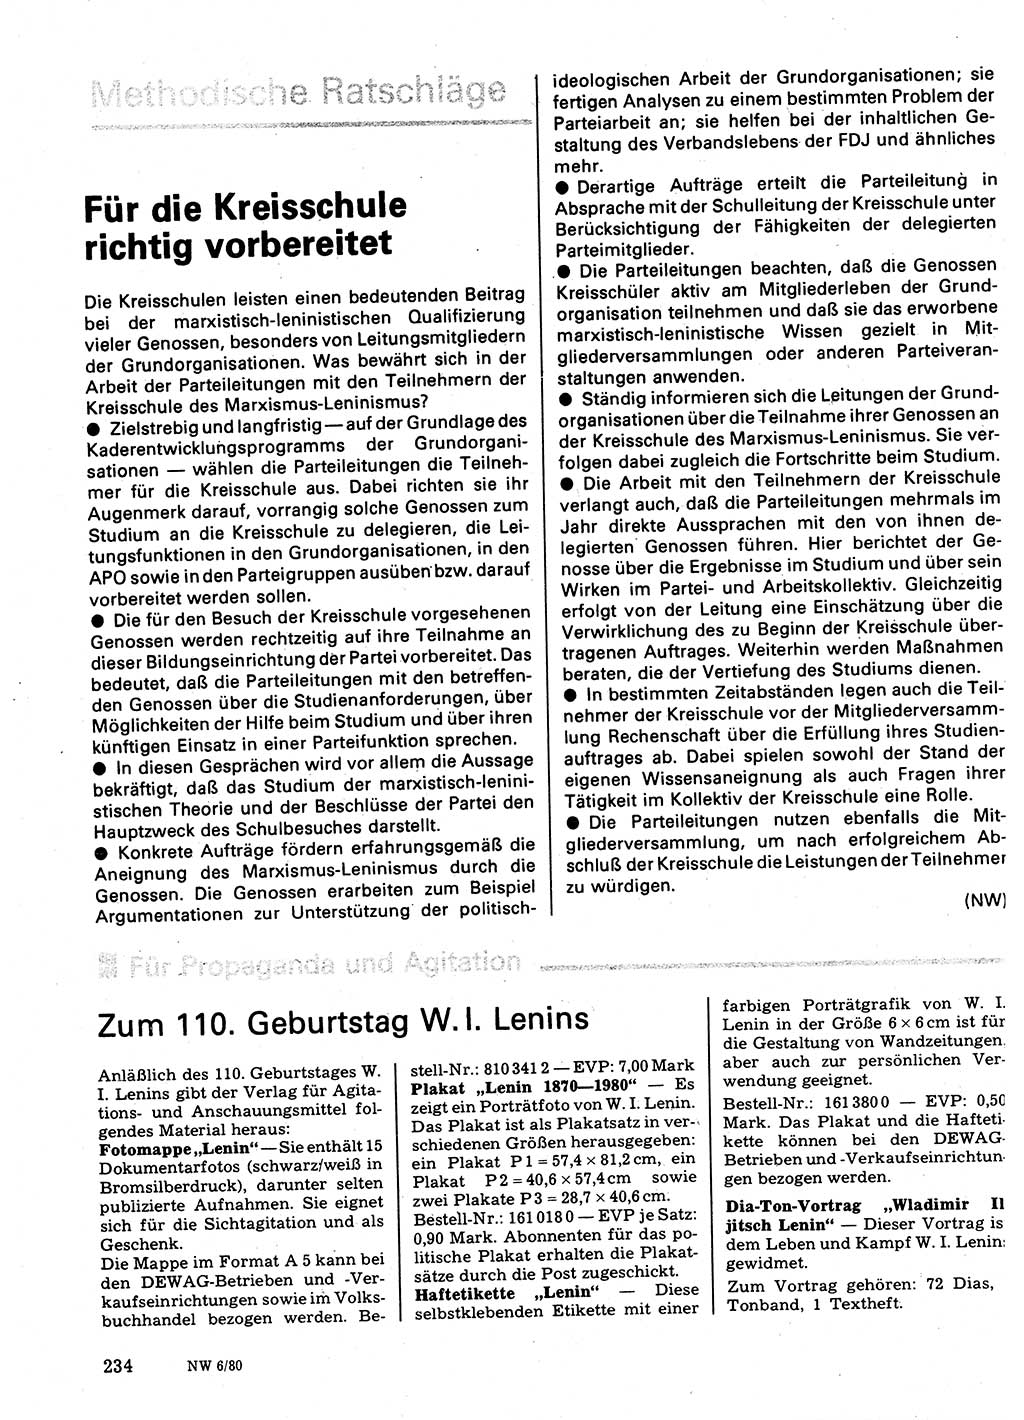 Neuer Weg (NW), Organ des Zentralkomitees (ZK) der SED (Sozialistische Einheitspartei Deutschlands) für Fragen des Parteilebens, 35. Jahrgang [Deutsche Demokratische Republik (DDR)] 1980, Seite 234 (NW ZK SED DDR 1980, S. 234)